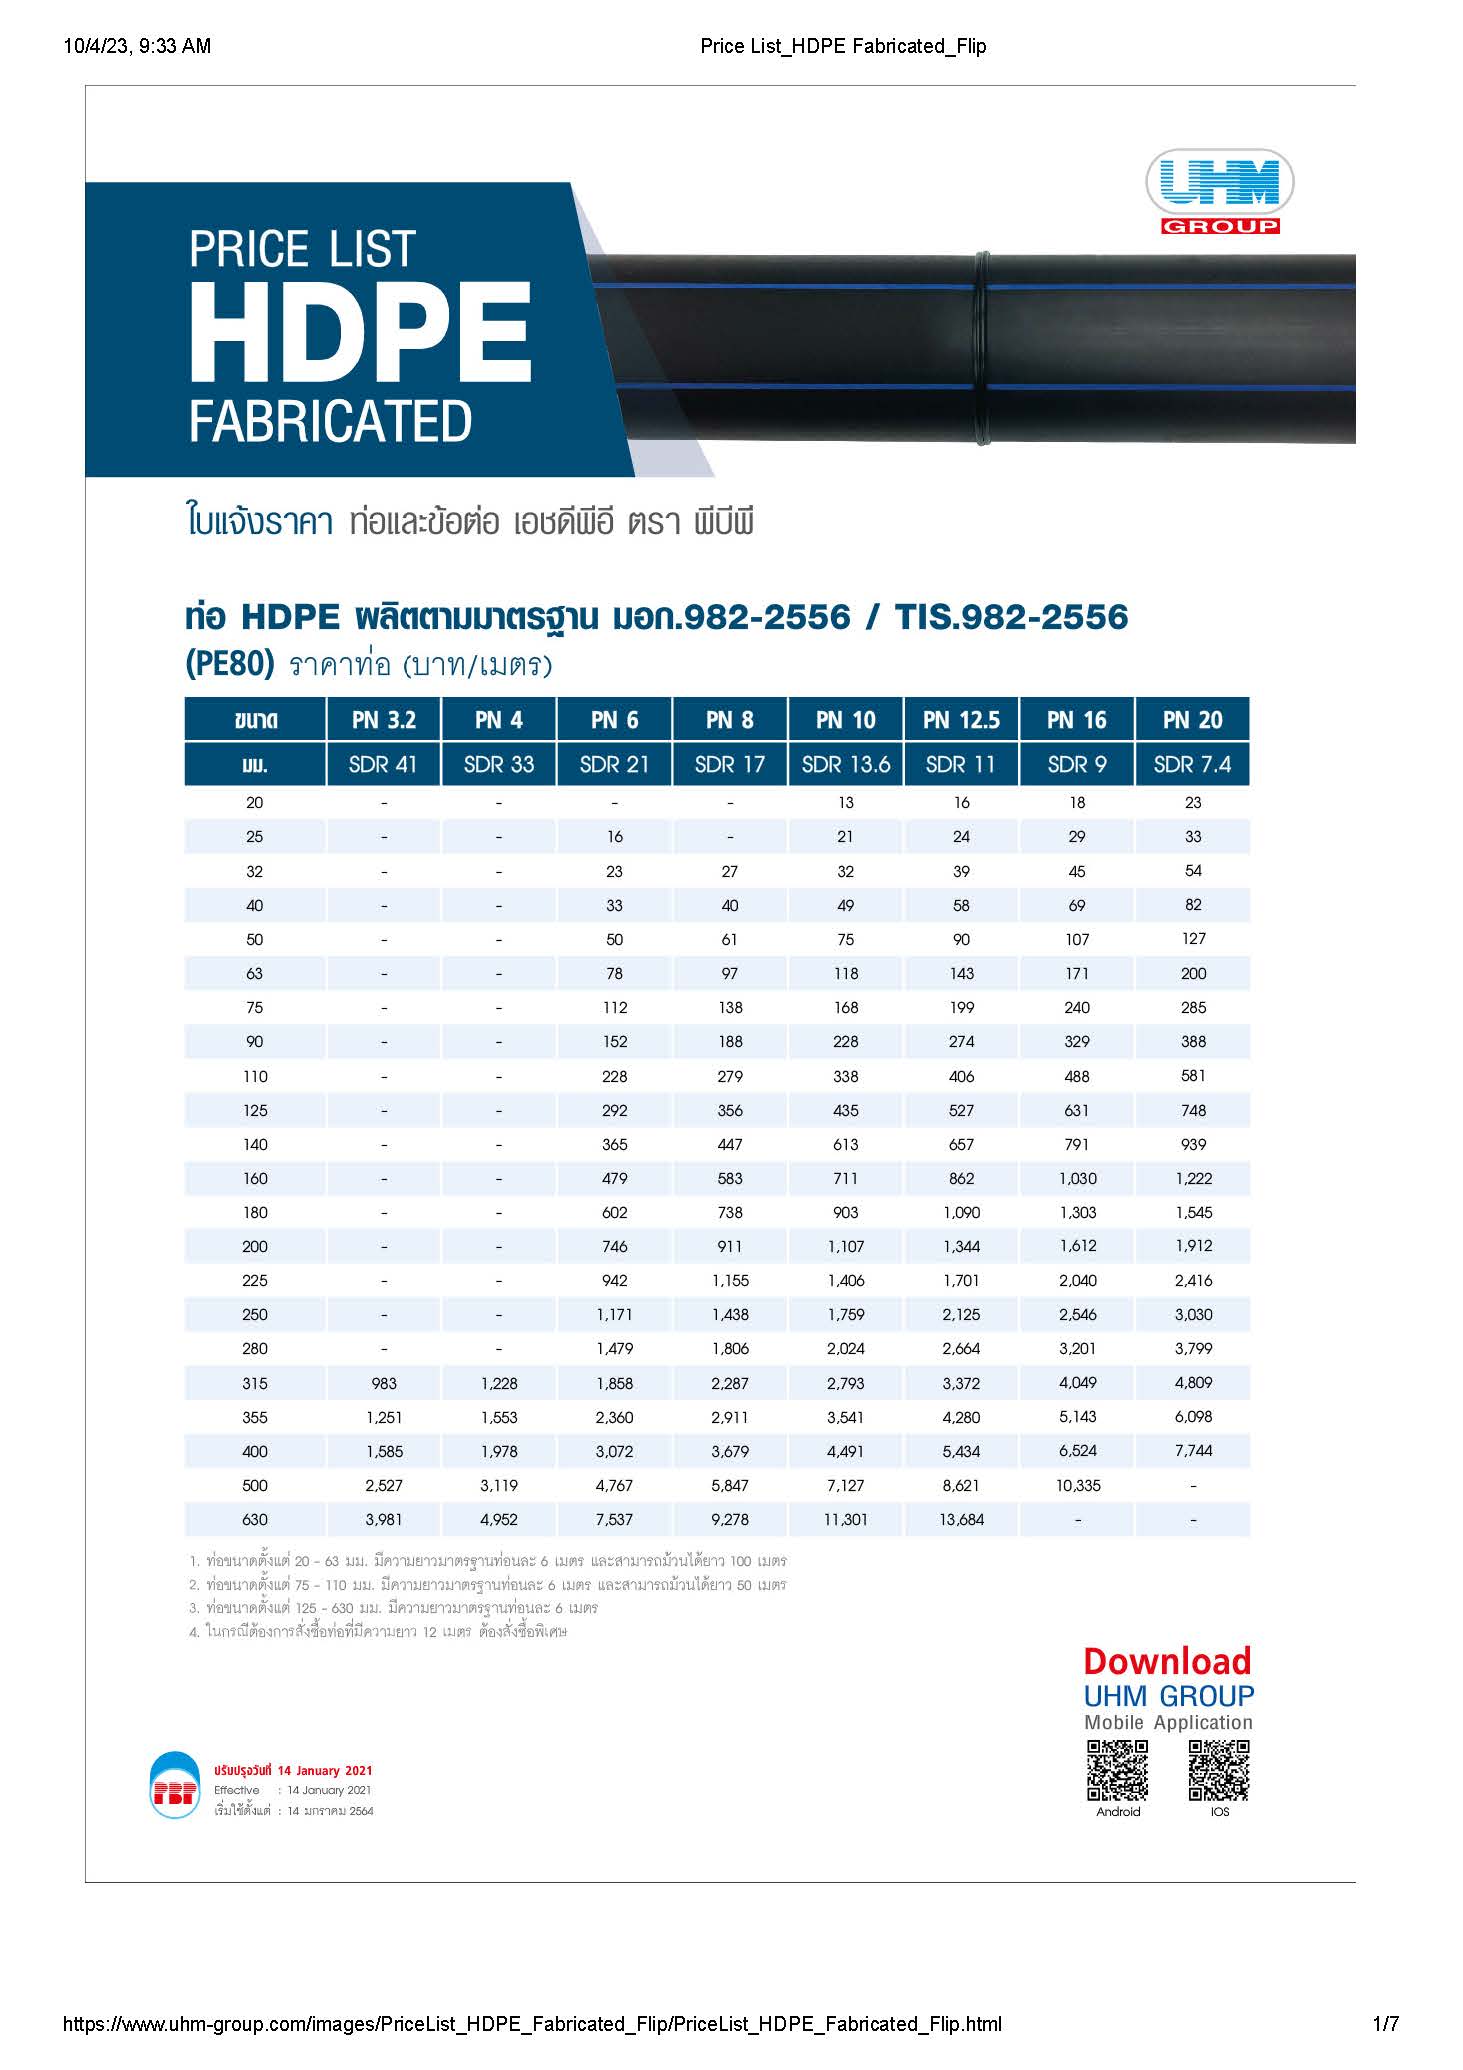 ราคาท่อ HDPE ปี 2566 